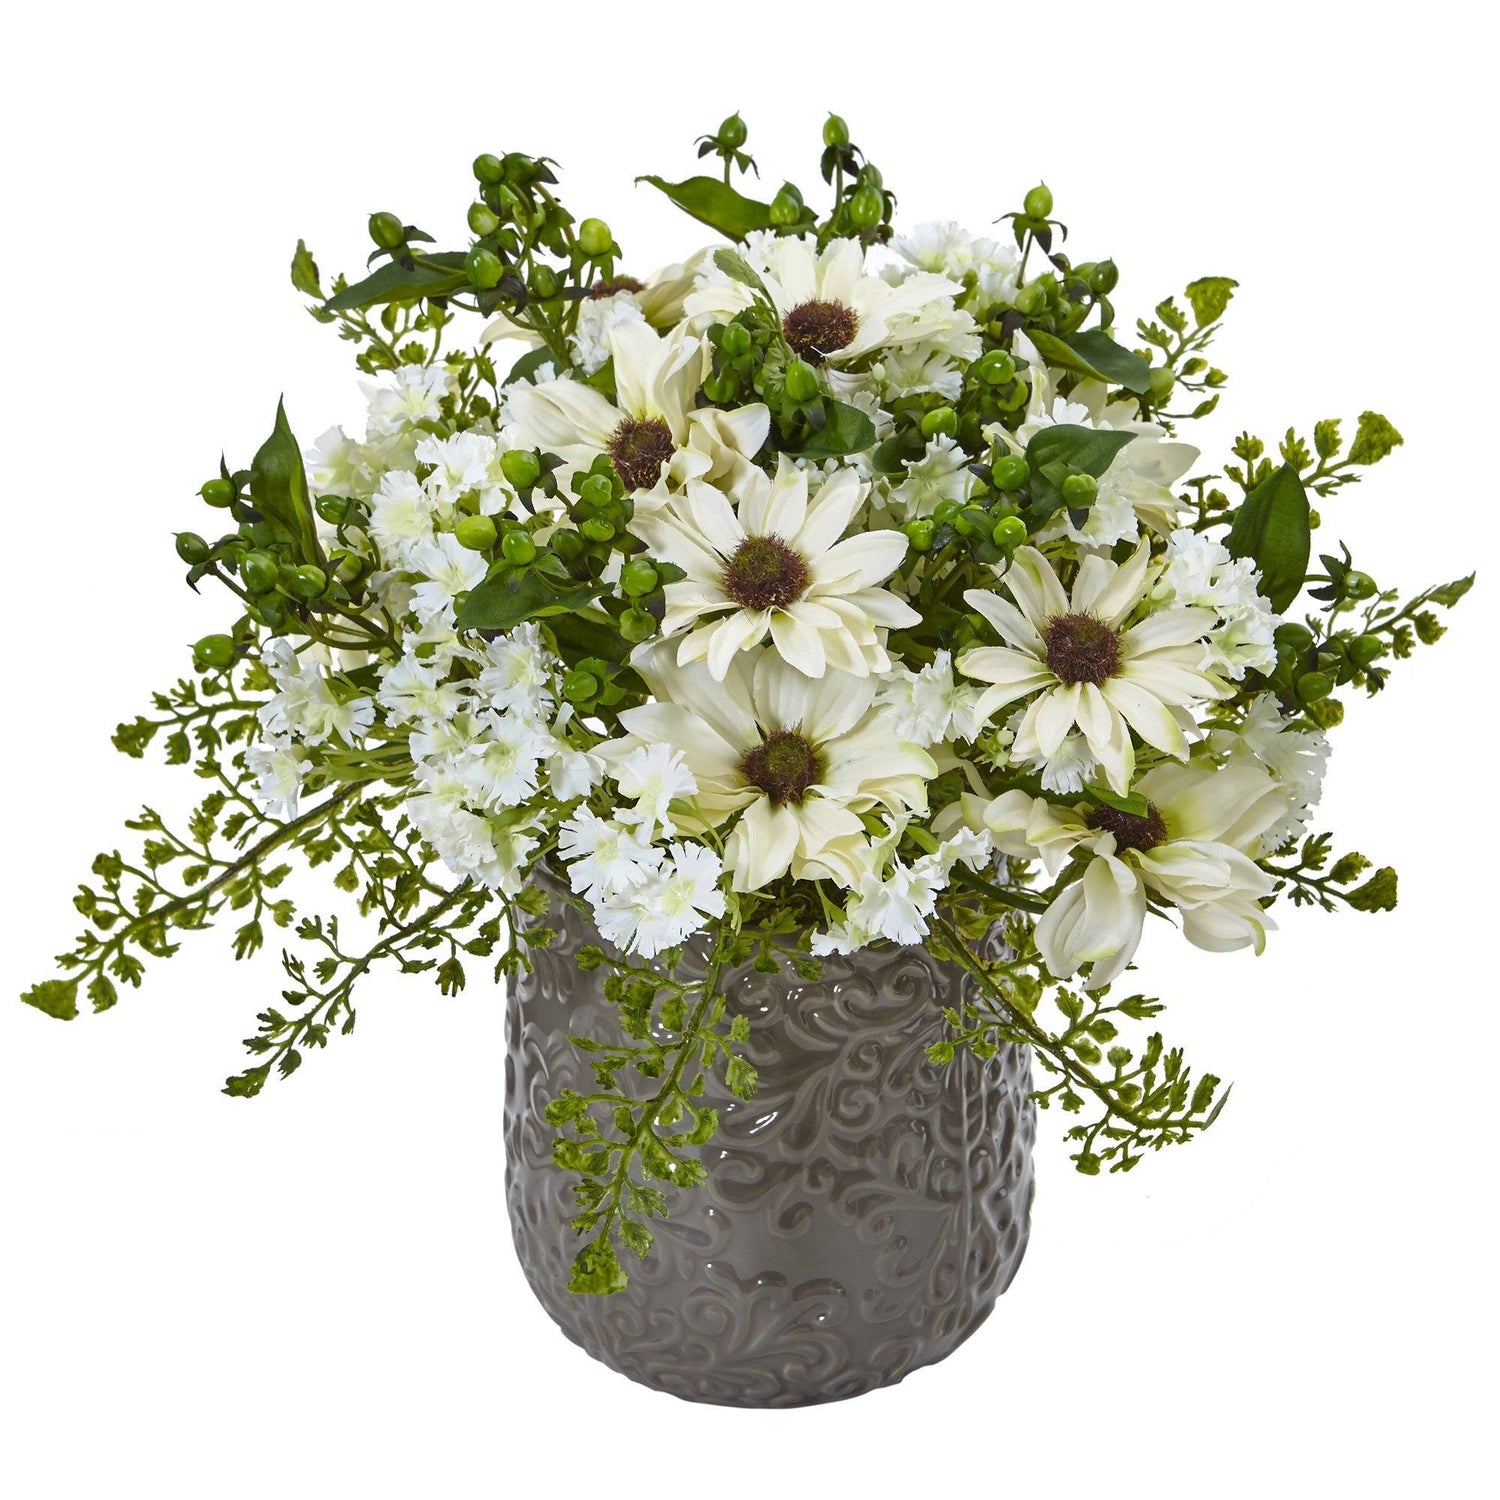 Daisy Bush in Gray Decorative Vase